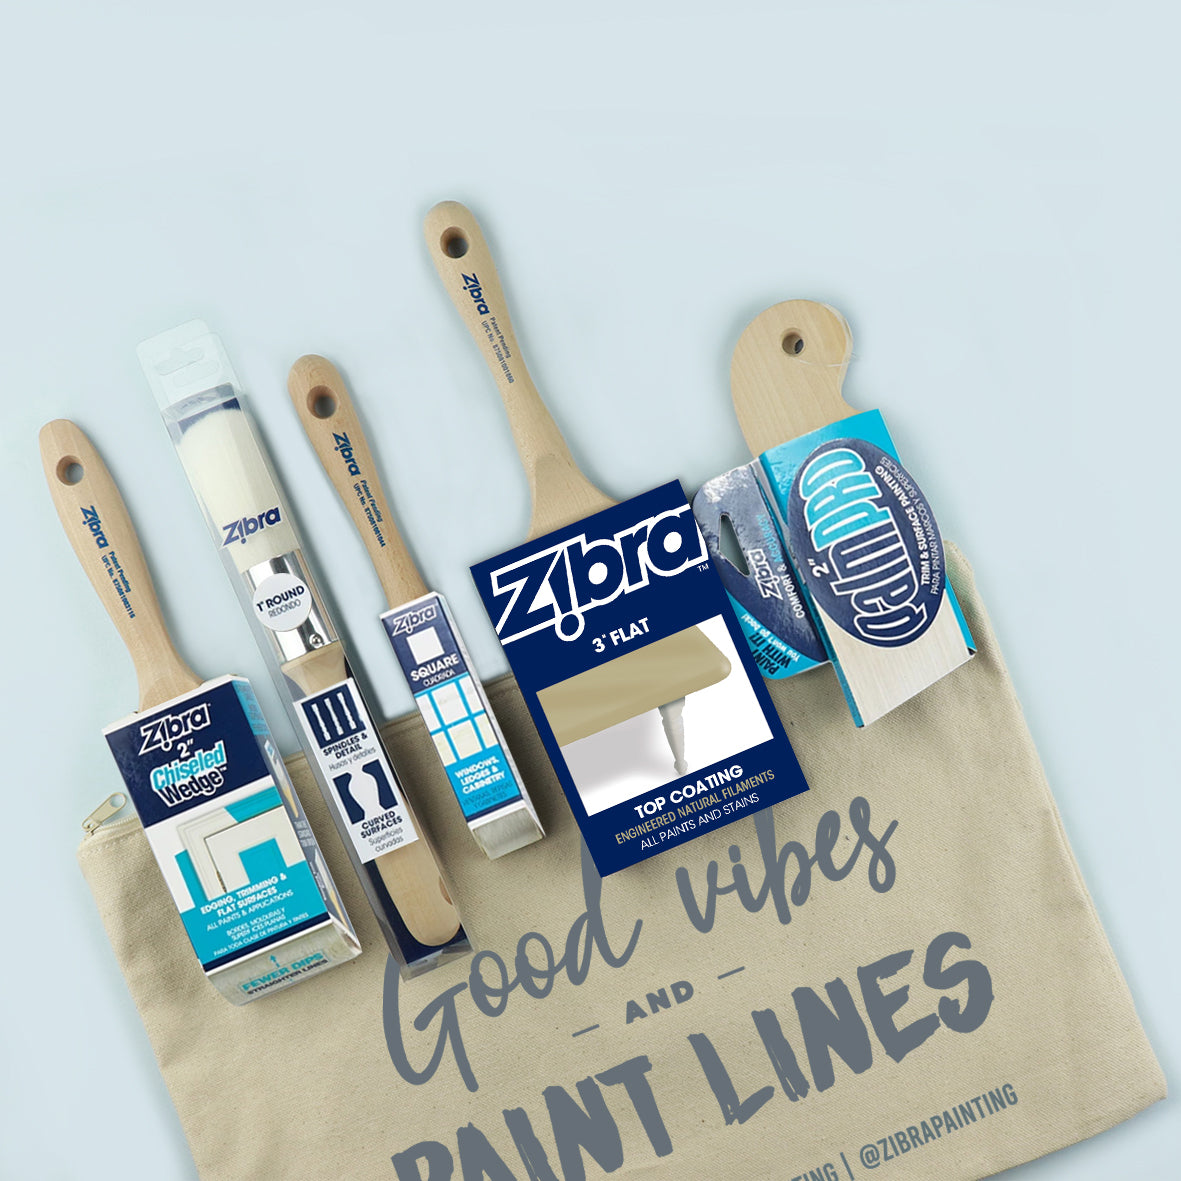 Best of Zibra w Top Coat Paintbrush Kit-5 piece